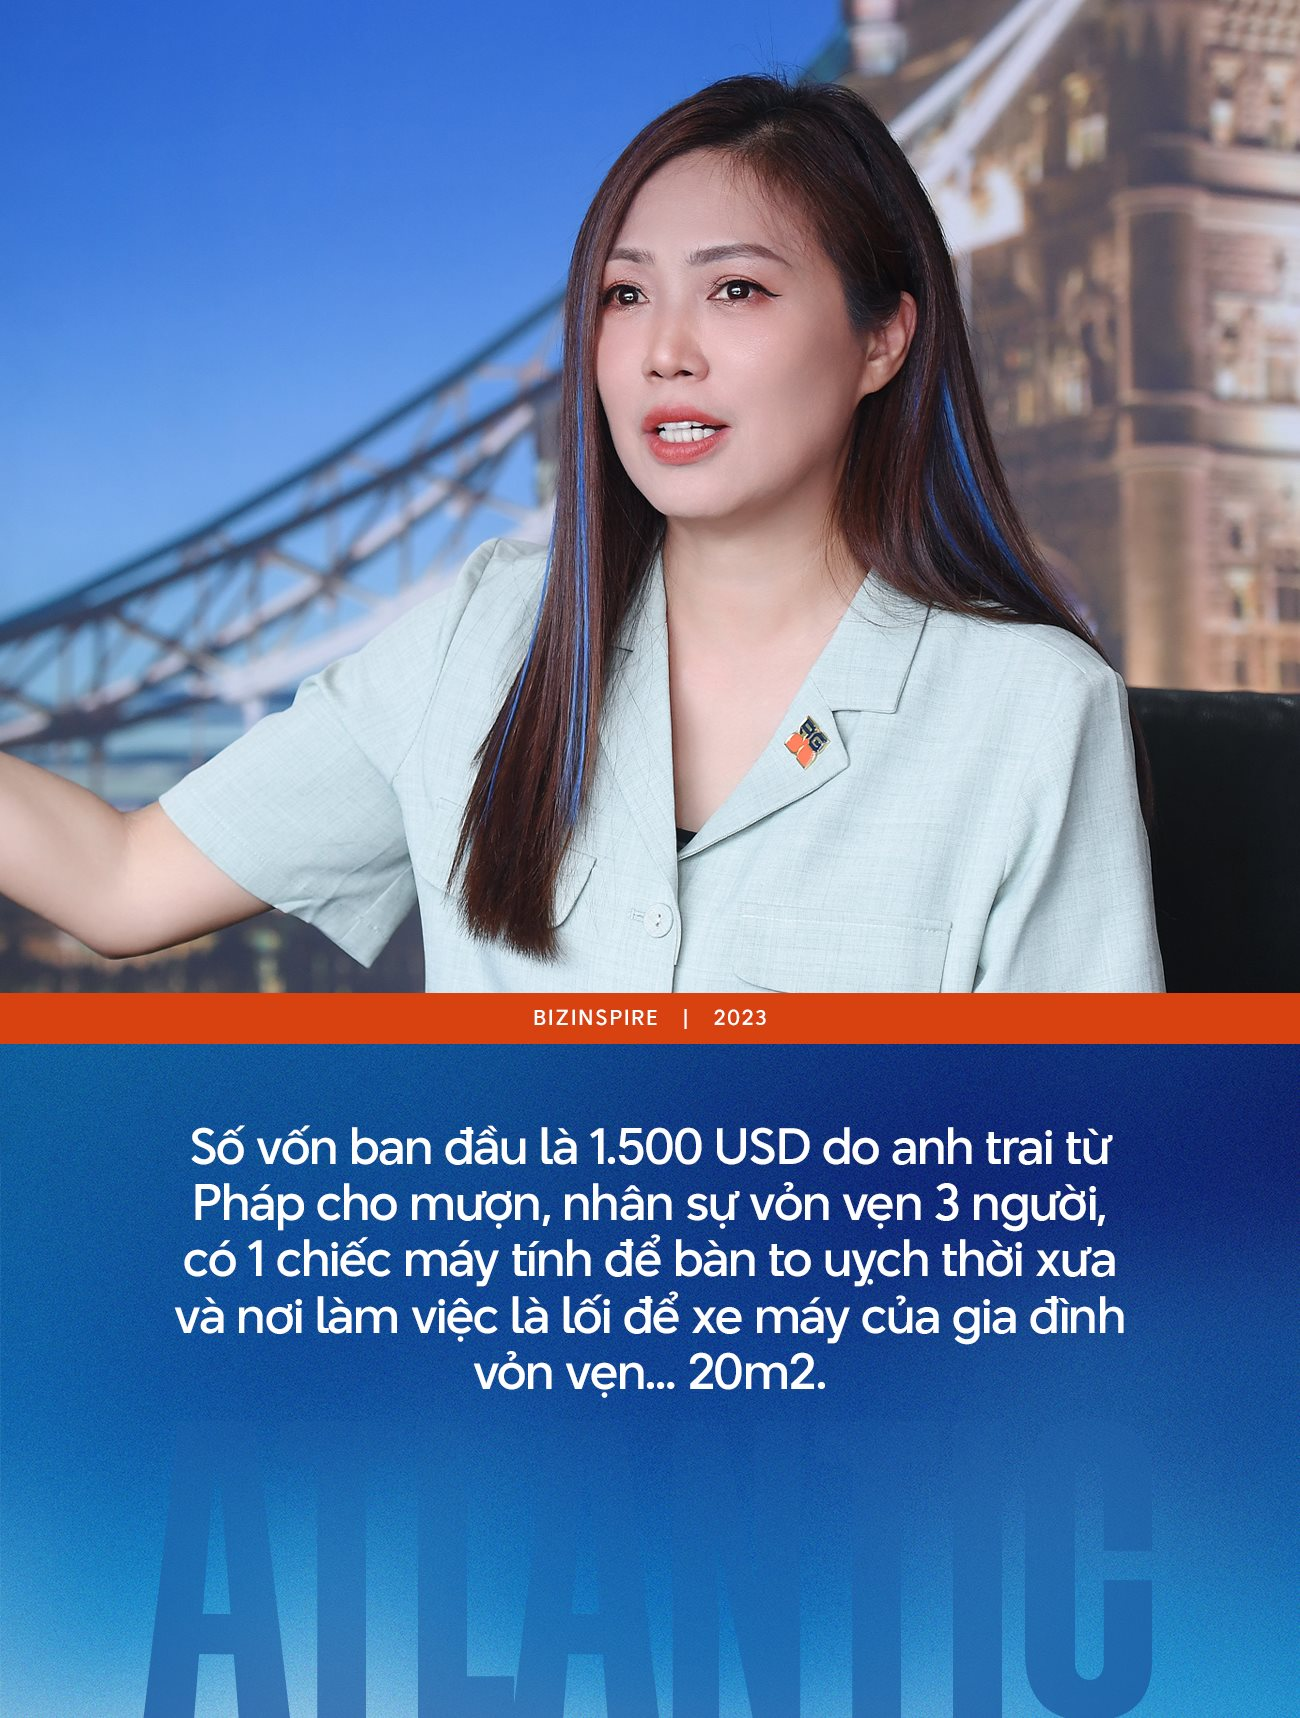 Sếp nữ duy nhất của “Whose Chance” - 3 lần startup, từng phải vay tiền bà bán gạo để trả lương và giấc mơ mang tiếng Anh 5 sao đến với mọi trẻ em Việt - Ảnh 1.